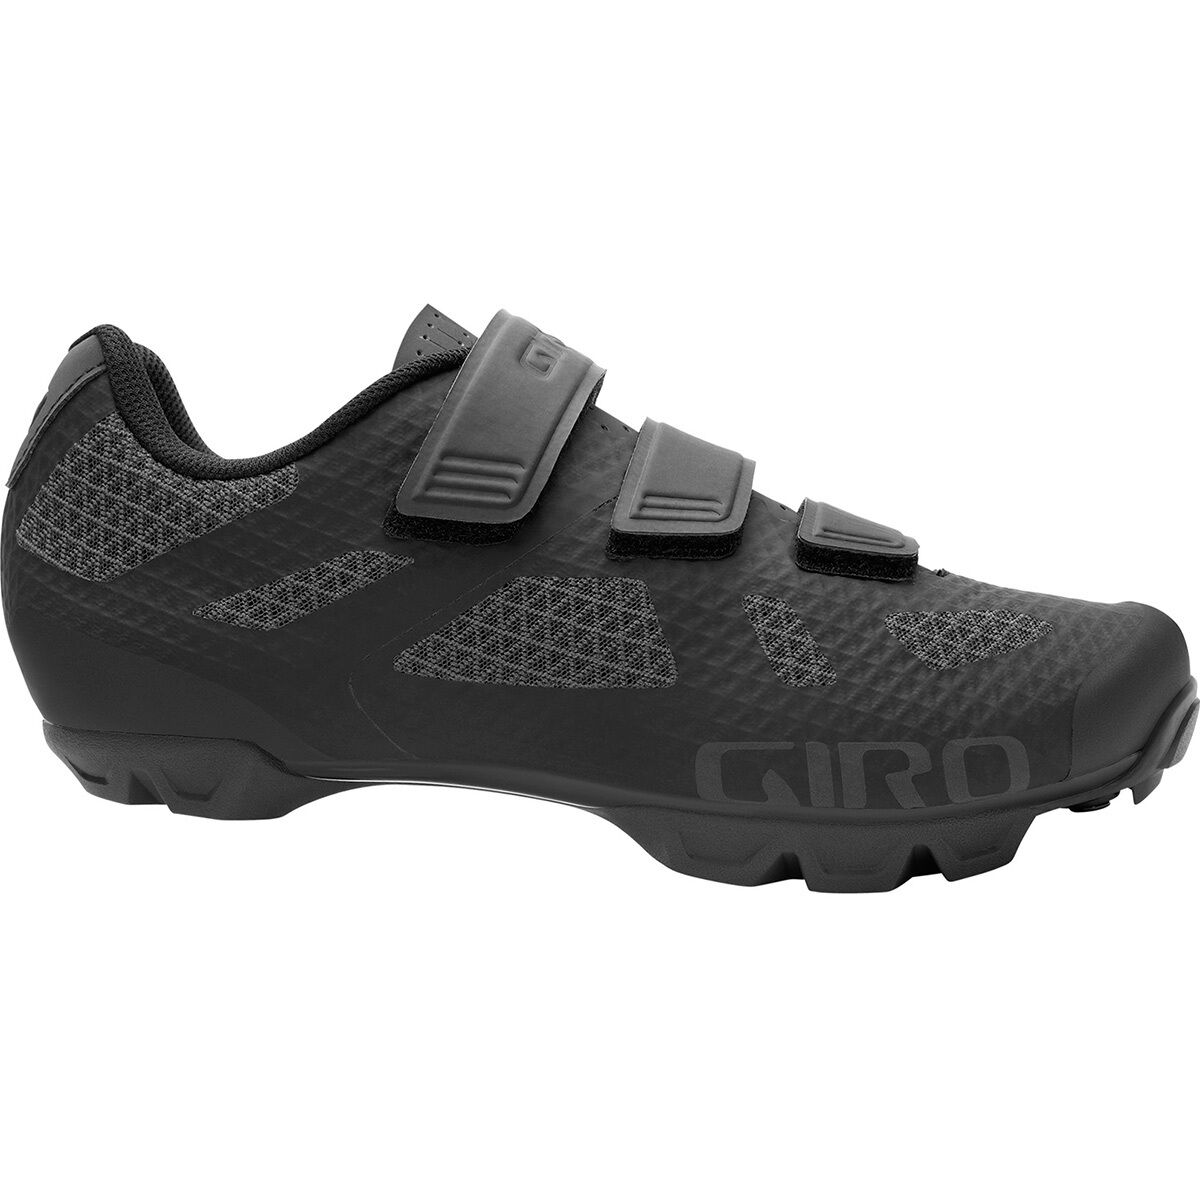 Giro Ranger Cycling Shoe - Men's Black, 46.0